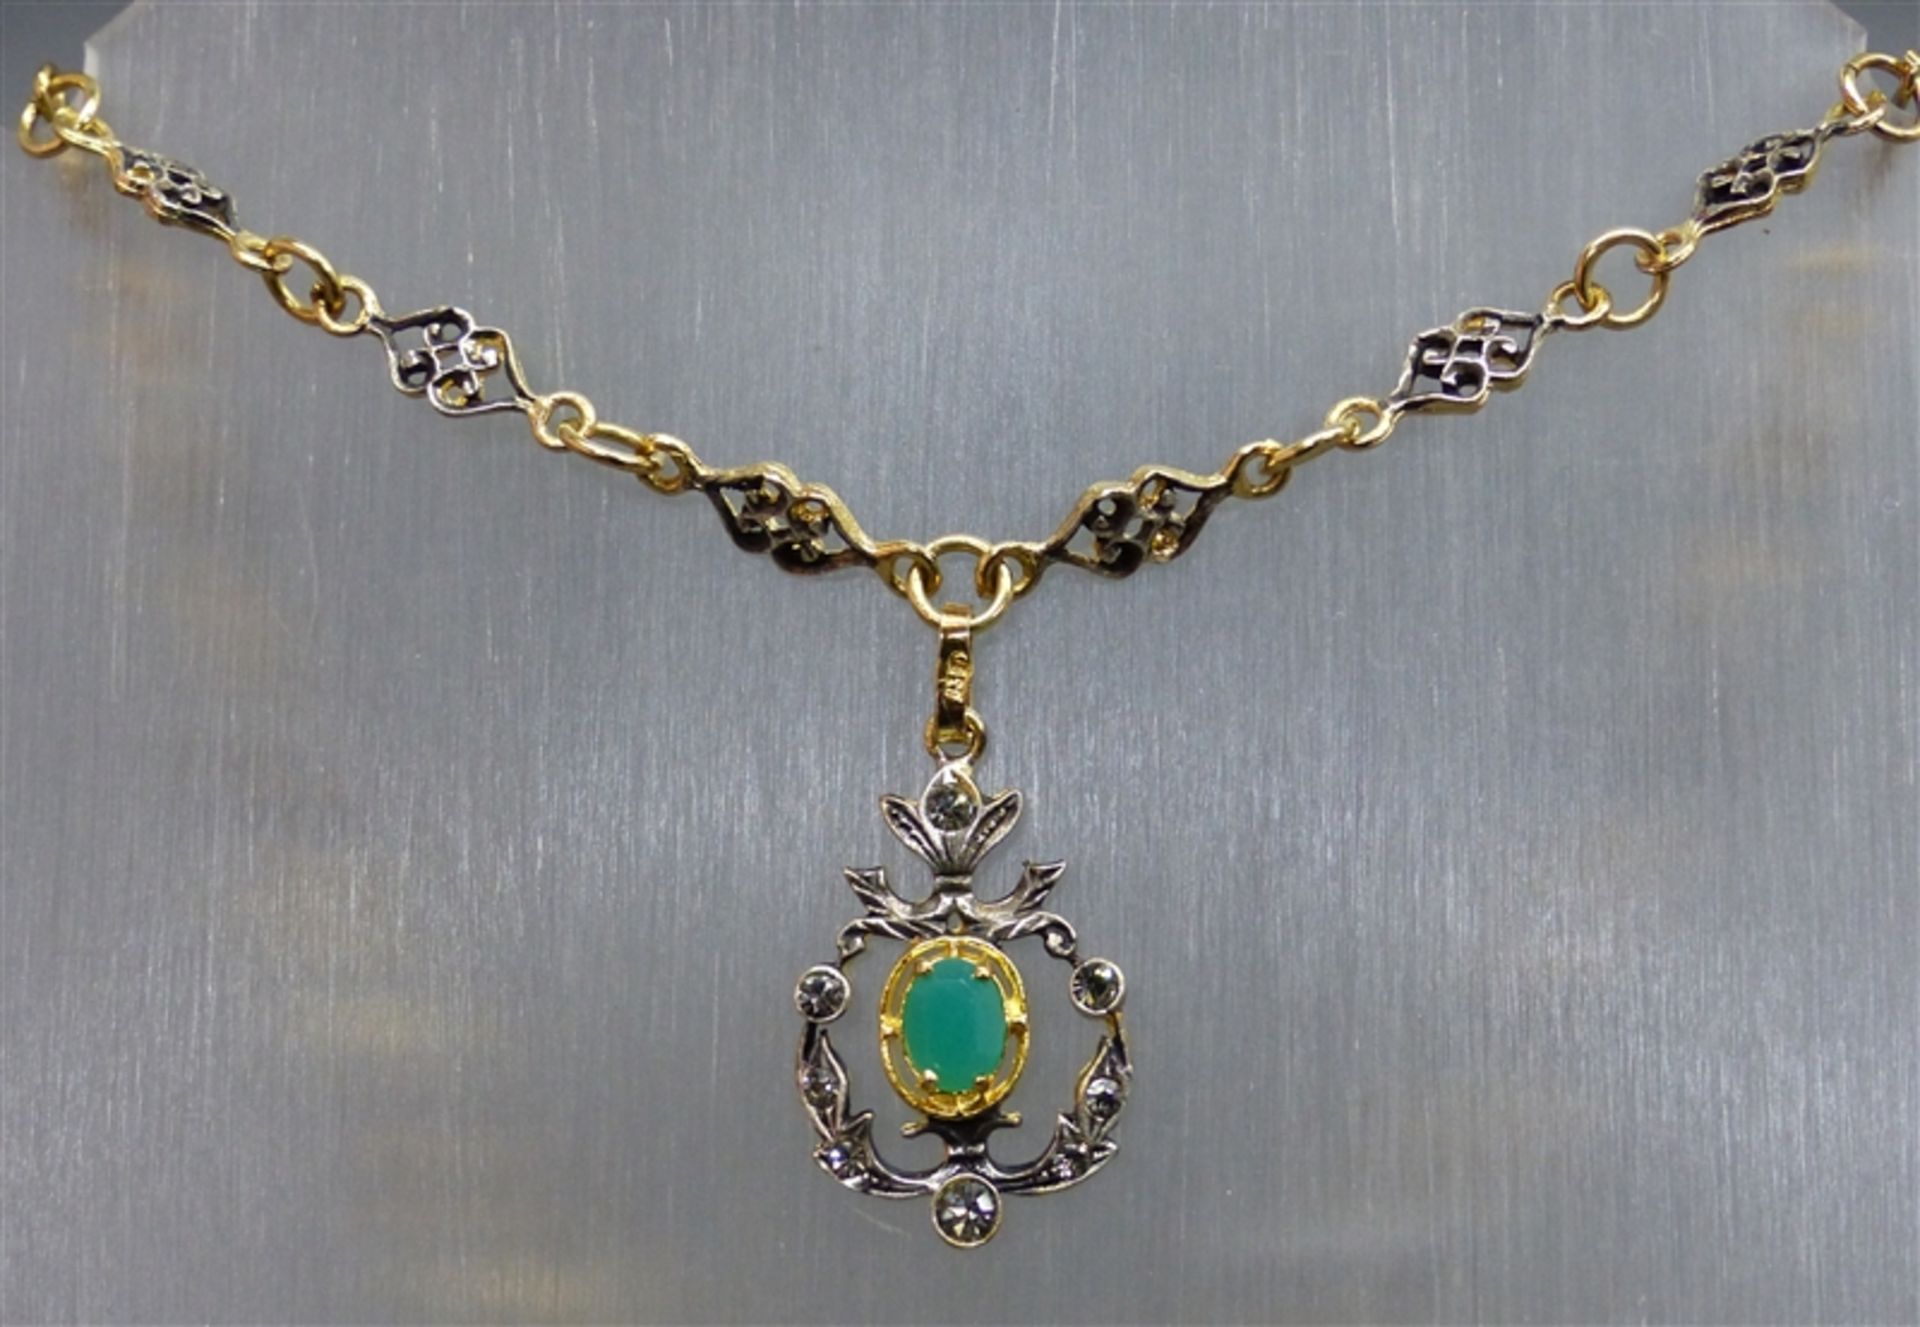 Collier 835 Silber, vergoldet, 1 Smaragd, geschliffene Steine, durchbrochen gearbeitet, antike Form,